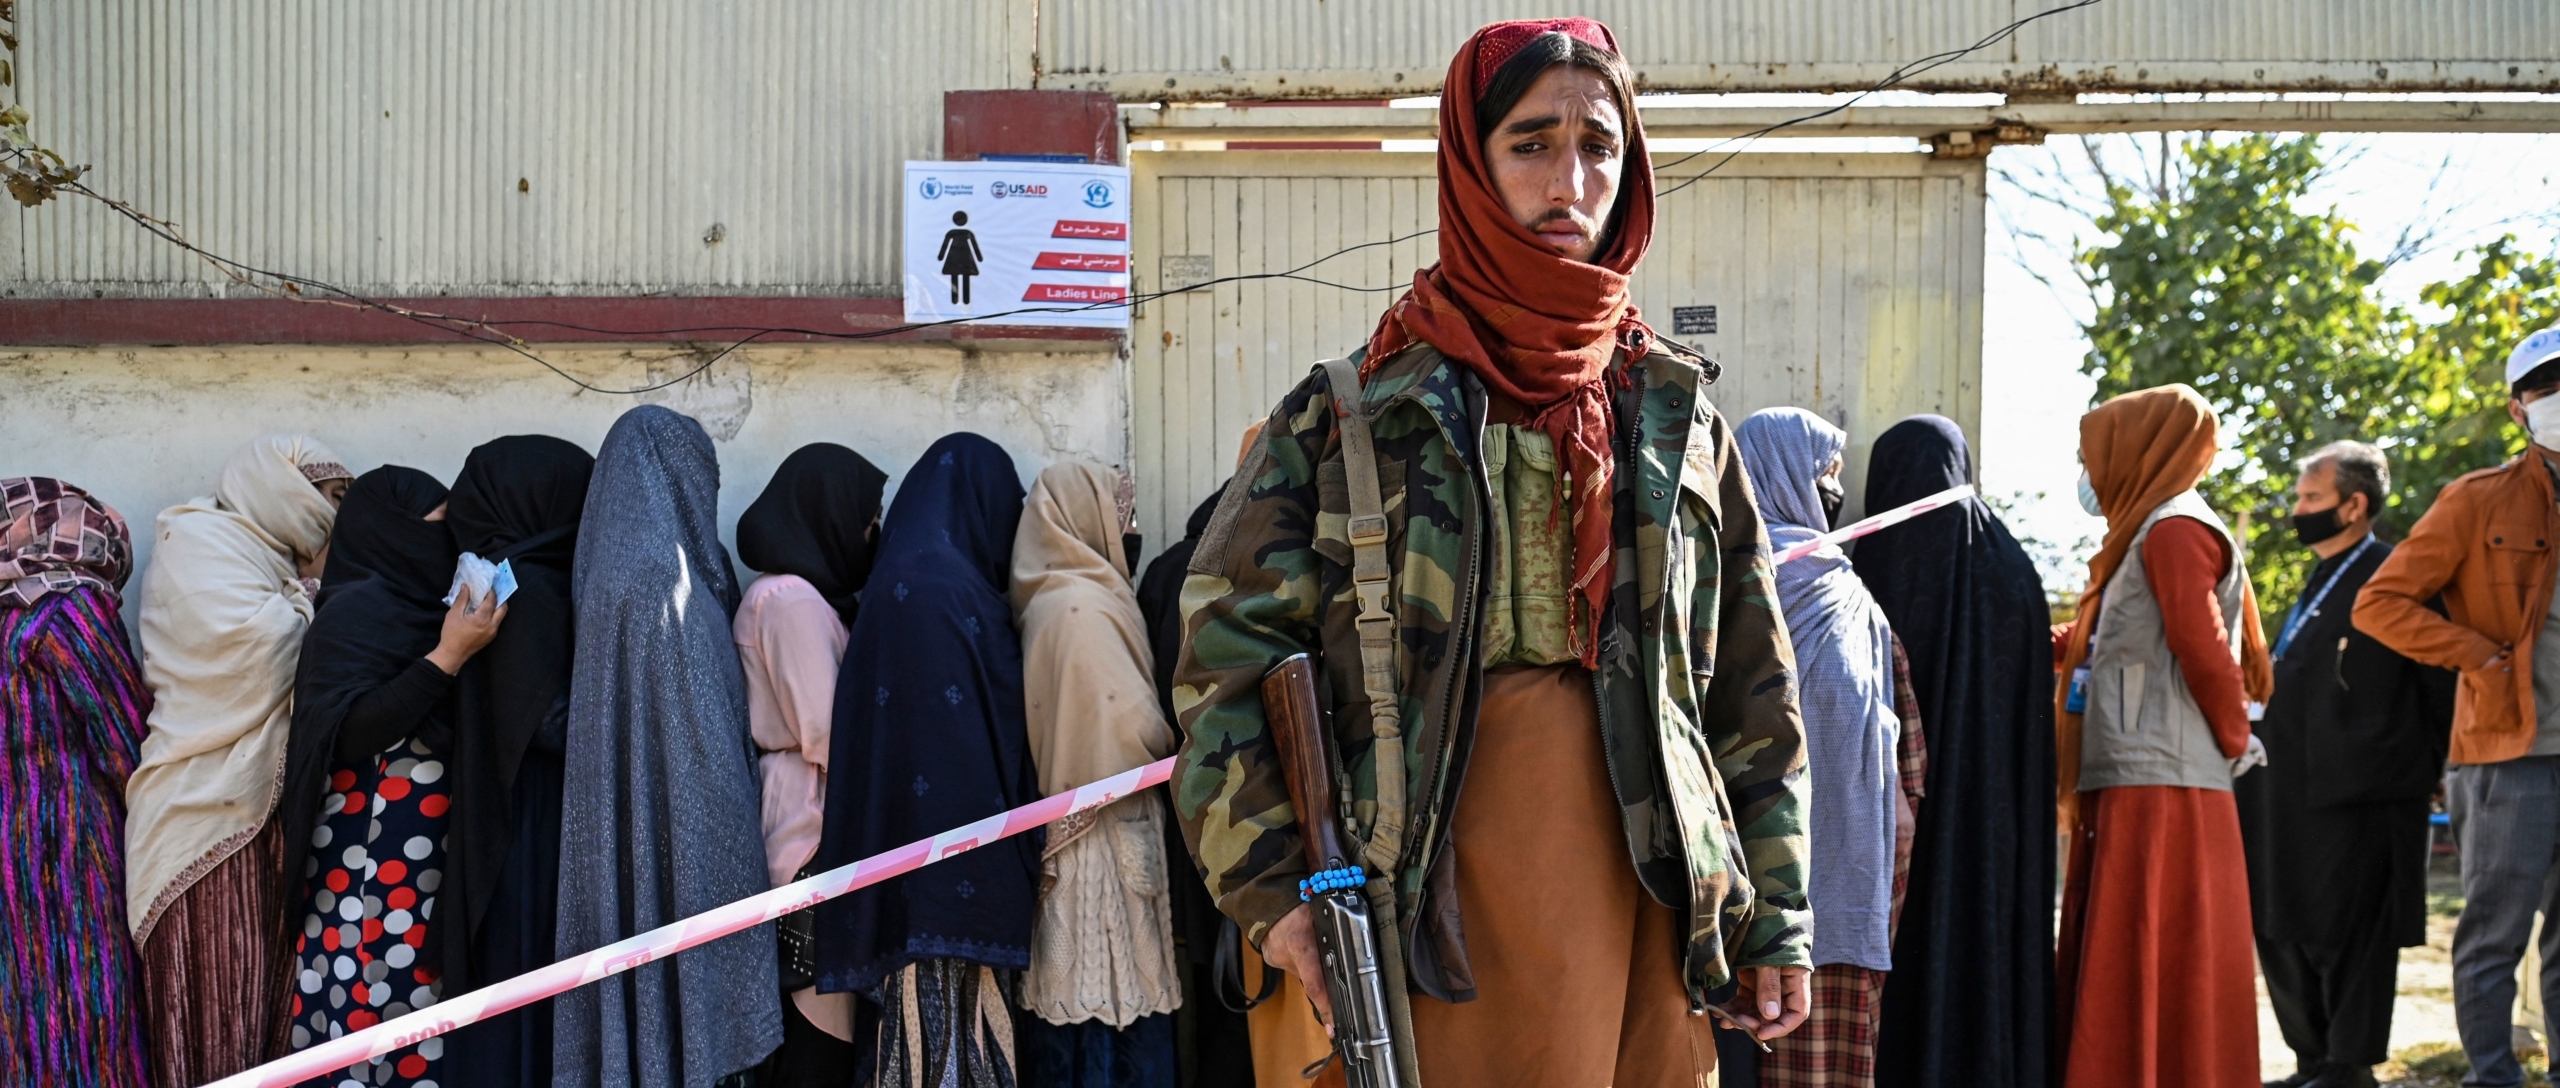 Afghanistan Survivors of gender-based violence abandoned following Taliban takeover